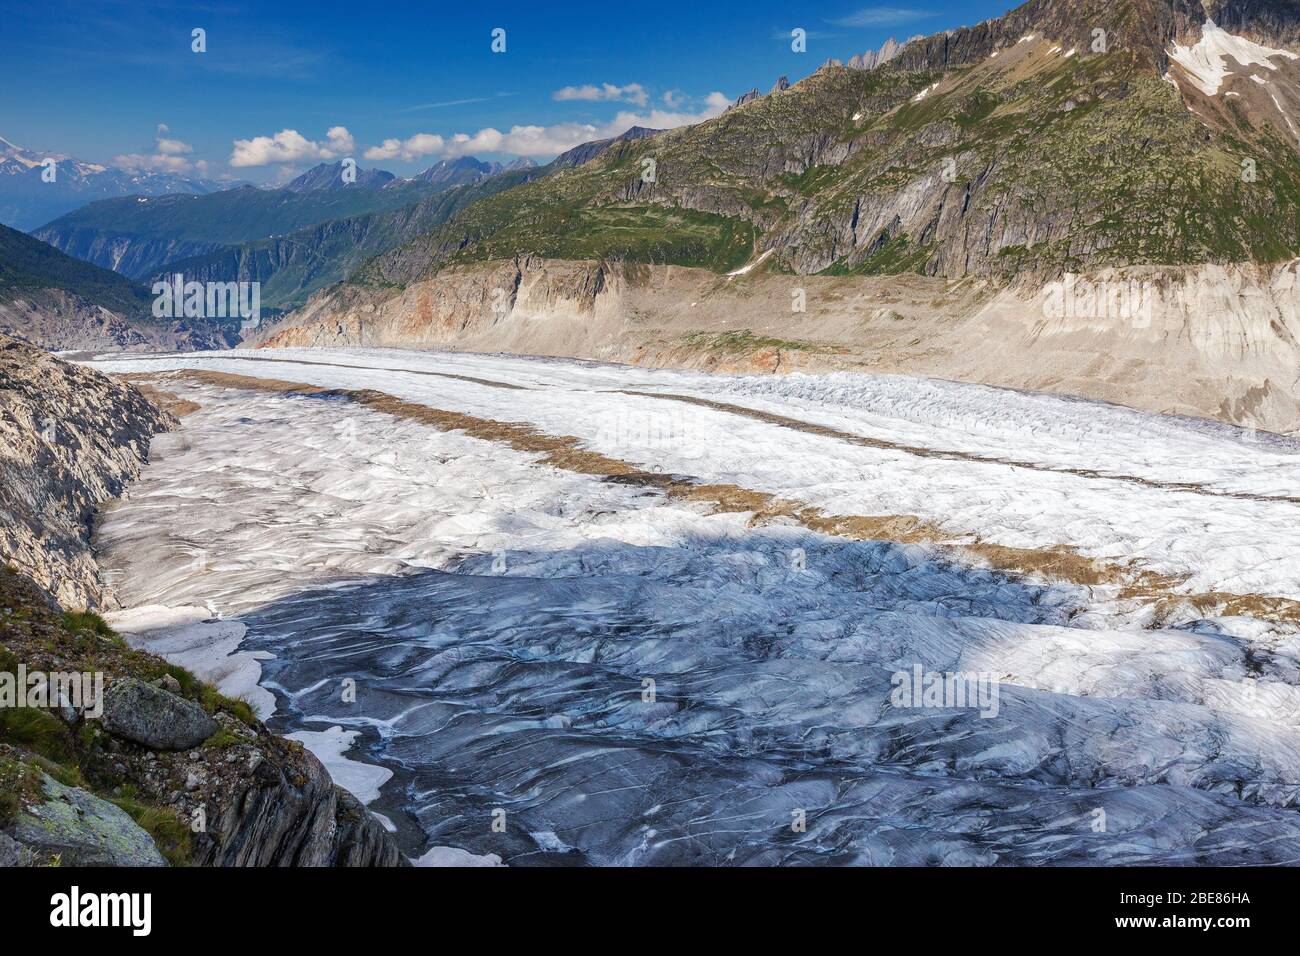 Il ghiacciaio Aletsch. Aletschgletscher. Alpi Bernesi orientali nel cantone svizzero del Vallese. Svizzera. Foto Stock